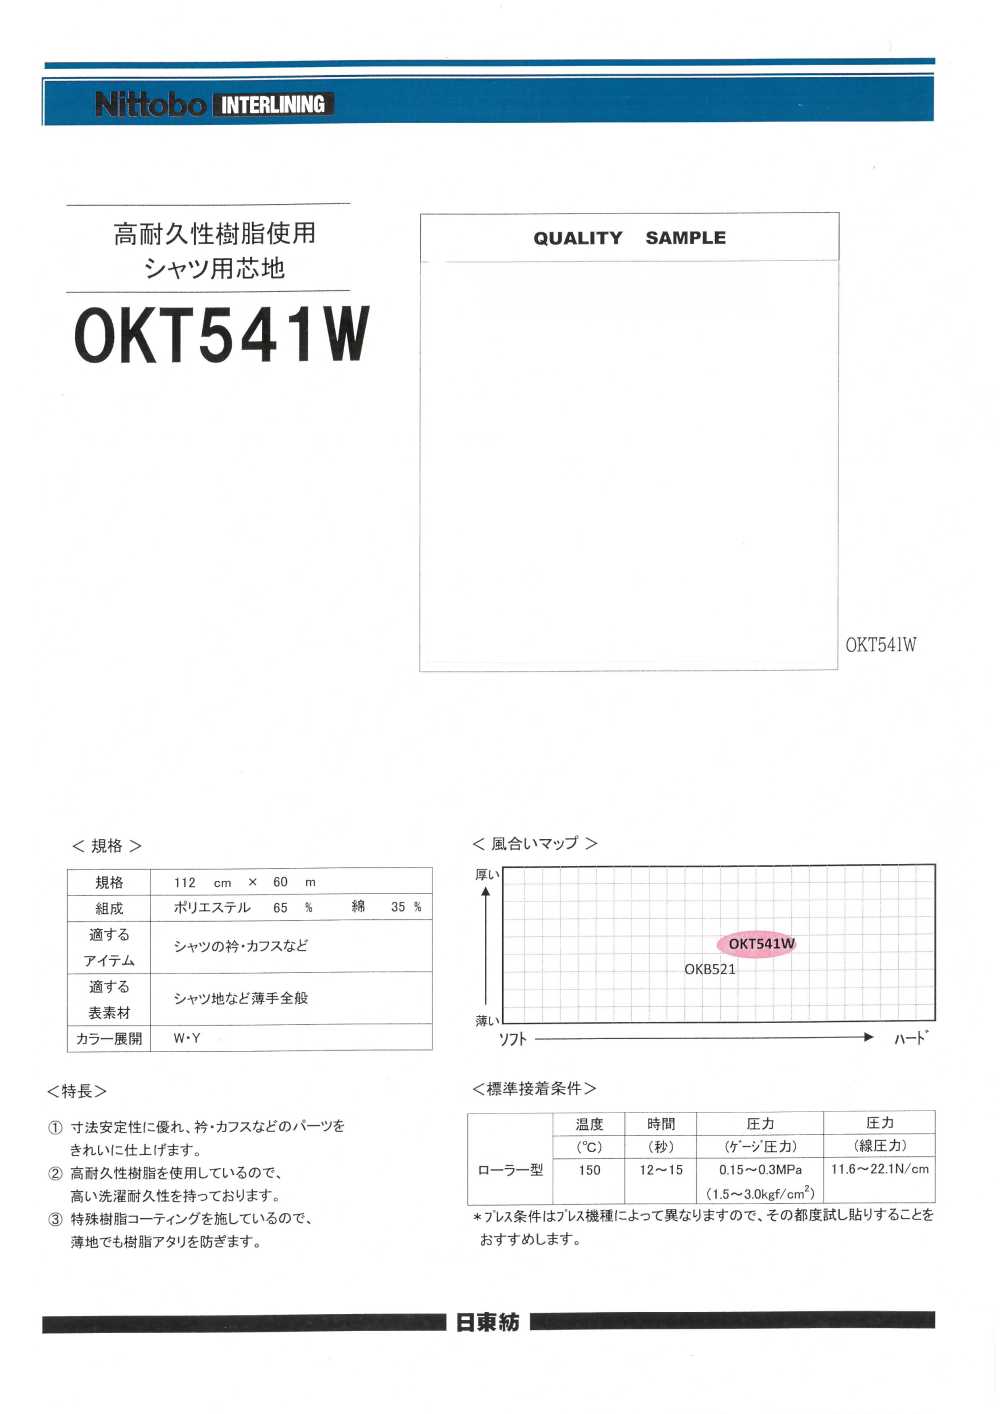 OKT541W 고내구성 수지 사용 셔츠용 심지 닛토보 (닛토보인터라이닝)